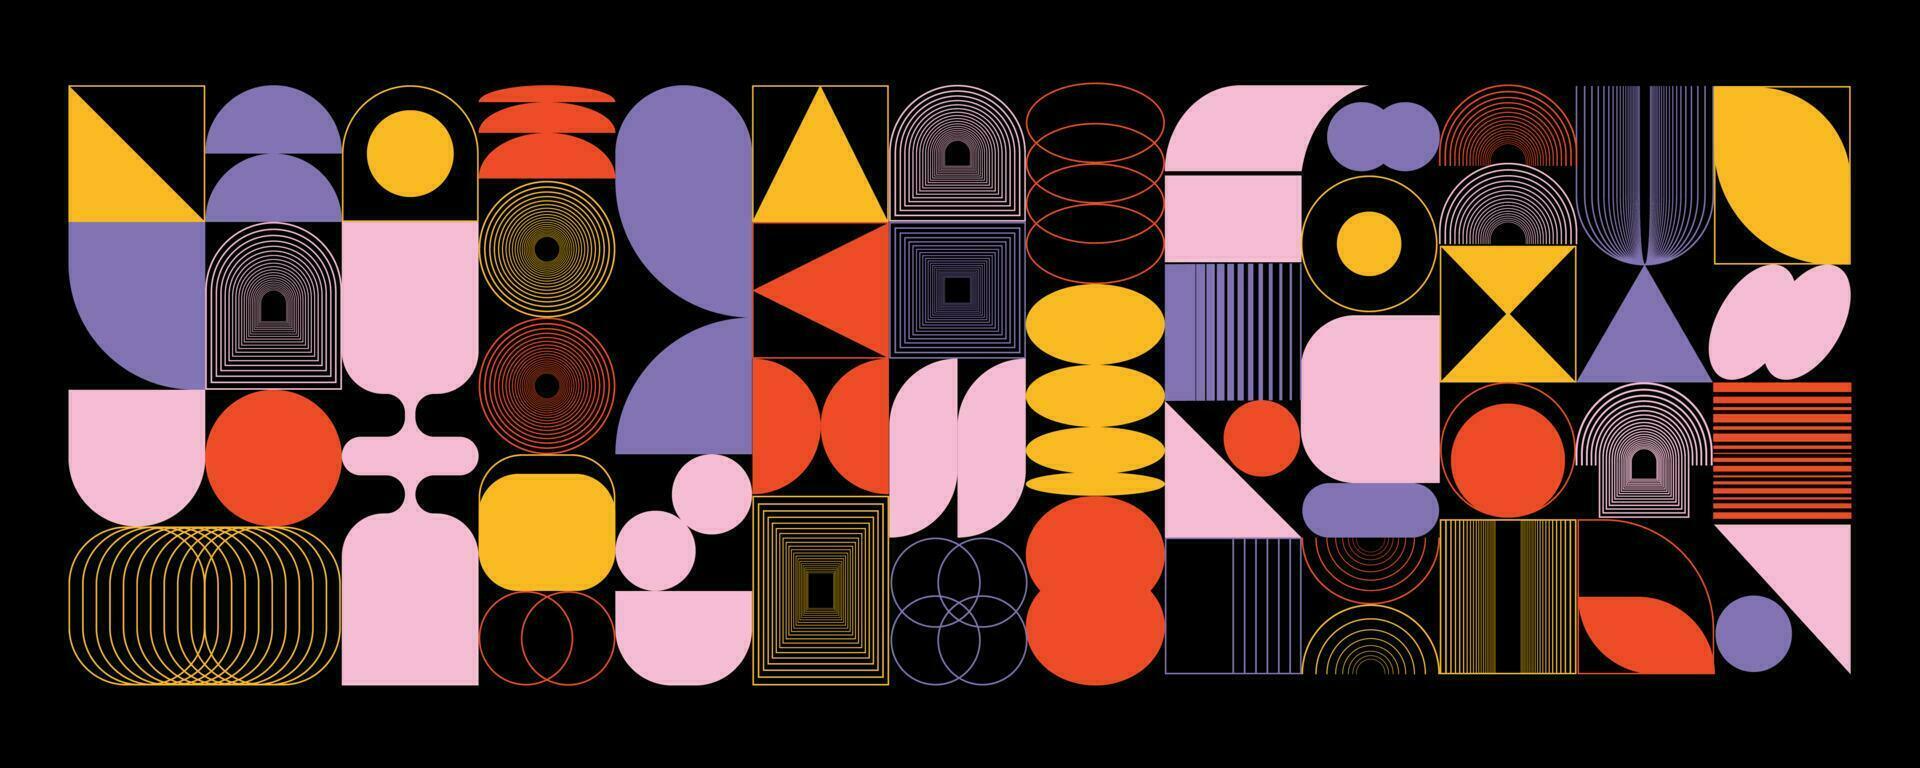 abstrakt geometrisk uppsättning av former, element, former oval, spiral, fyrkant, maska, båge. swiss design bauhaus memphis. vektor illustration.